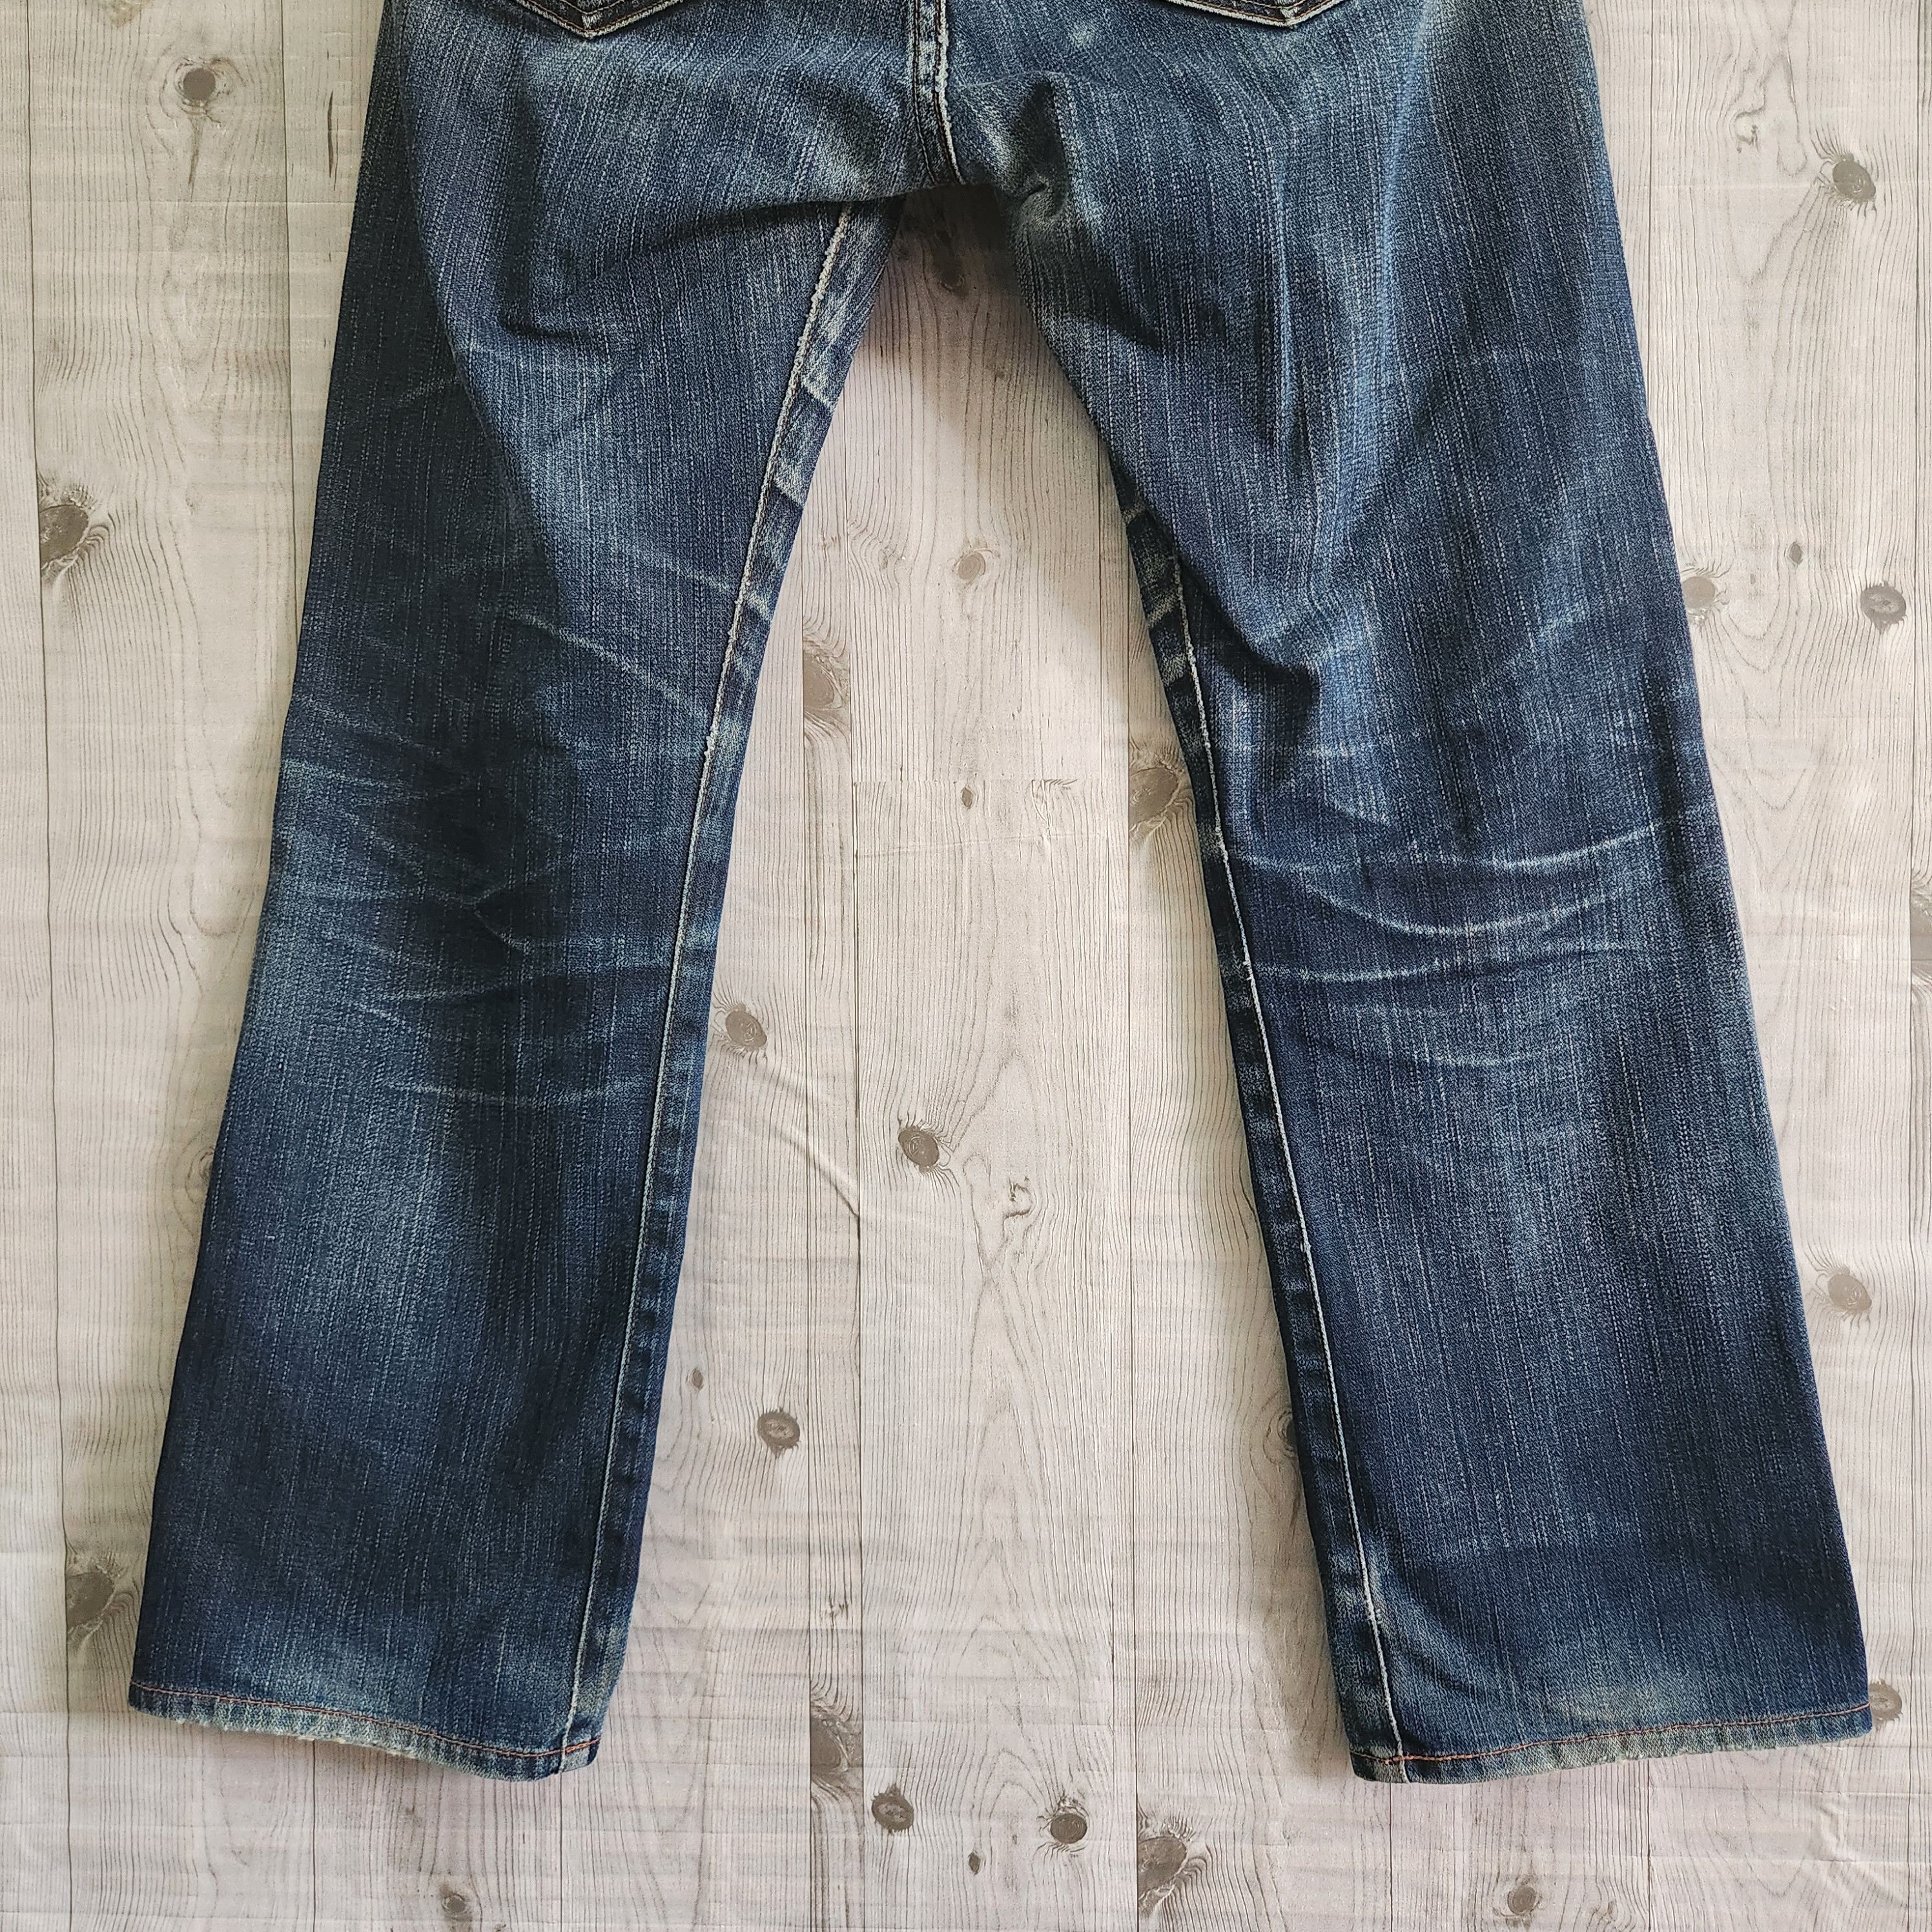 Levis 505 Premium Distressed Denim Jeans - 7